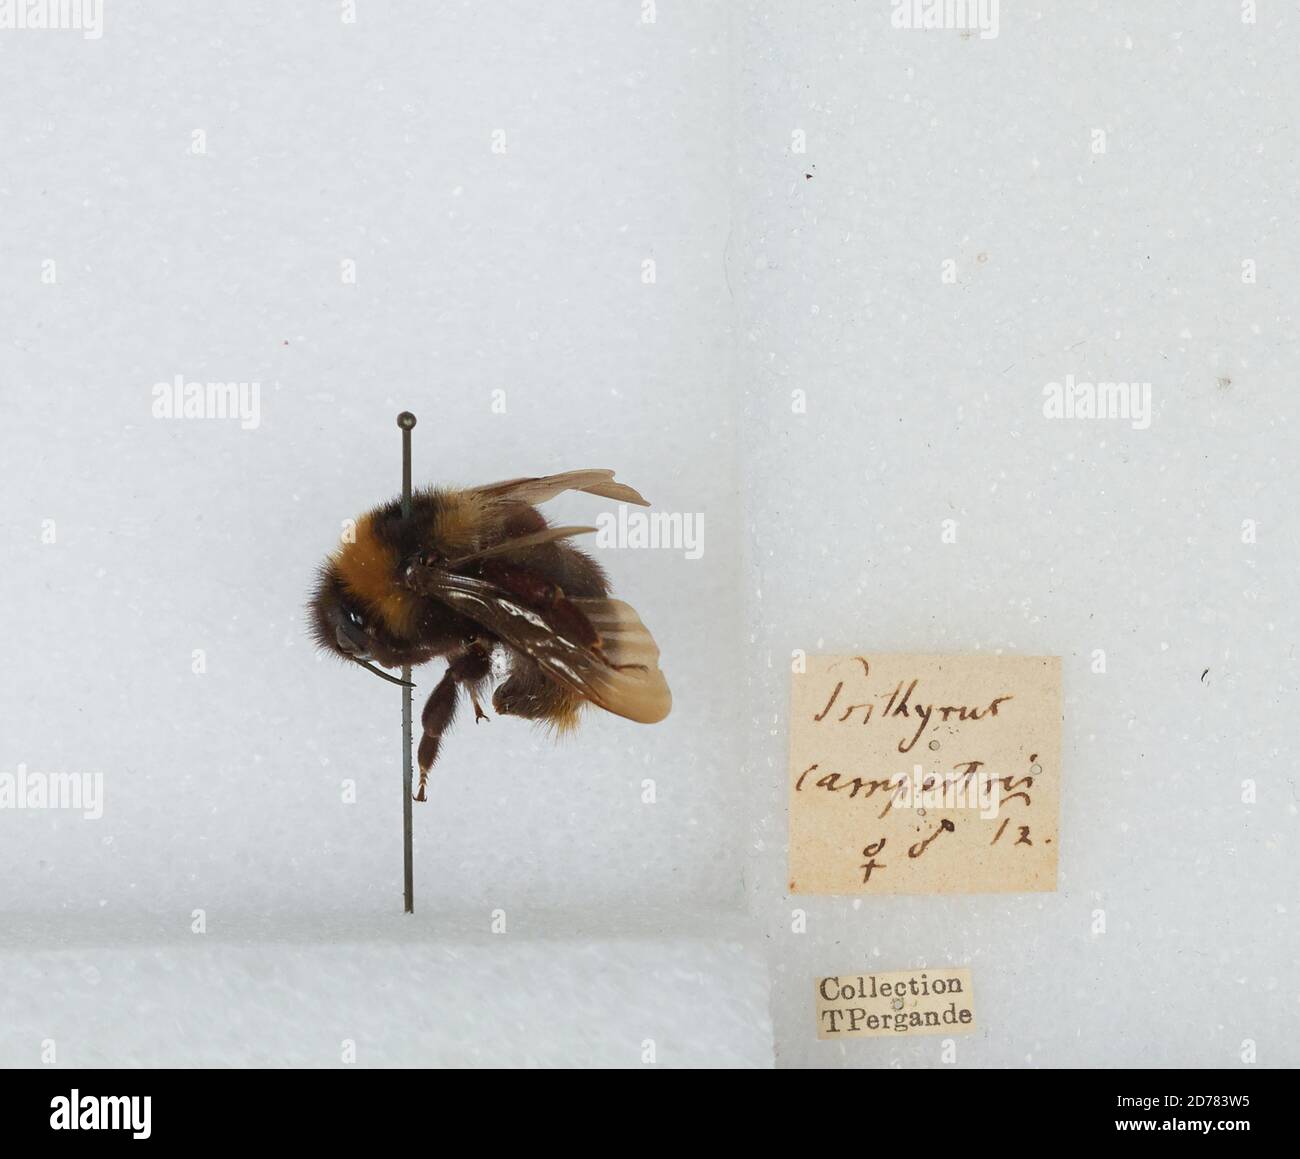 Bombus (Psithyrus) campestris Panzer, Animalia, Arthropoda, Insecta, Hymenoptera, Apidae, Apinae Stock Photo